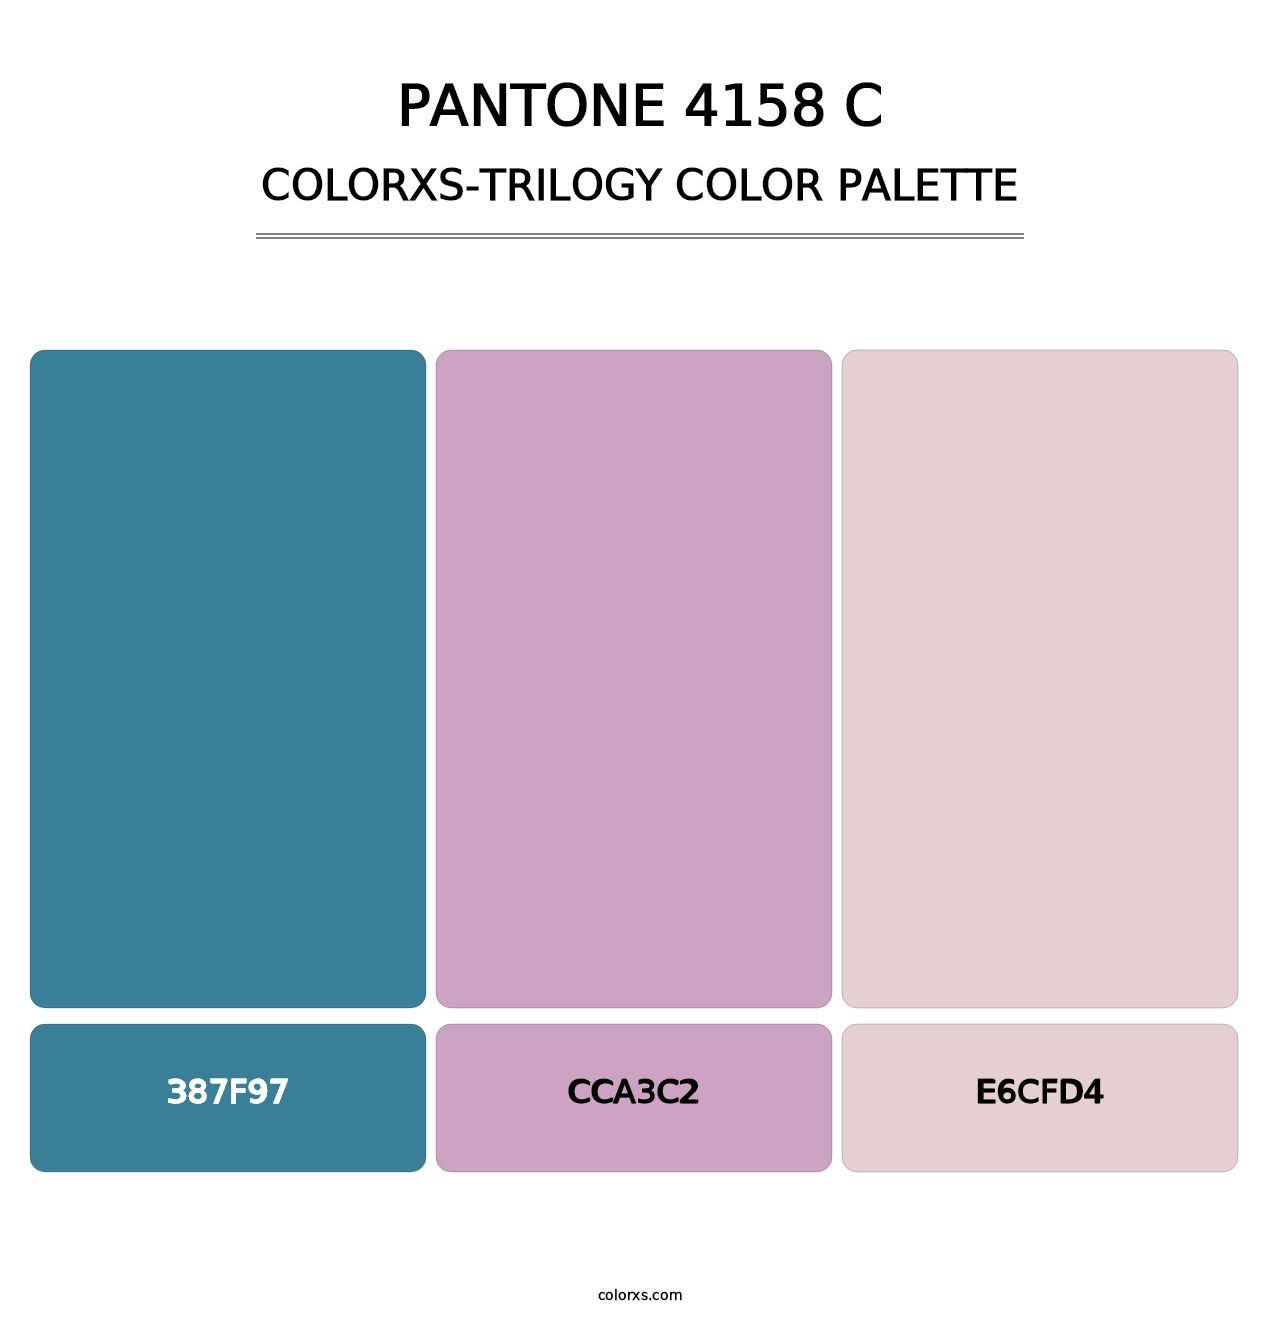 PANTONE 4158 C - Colorxs Trilogy Palette